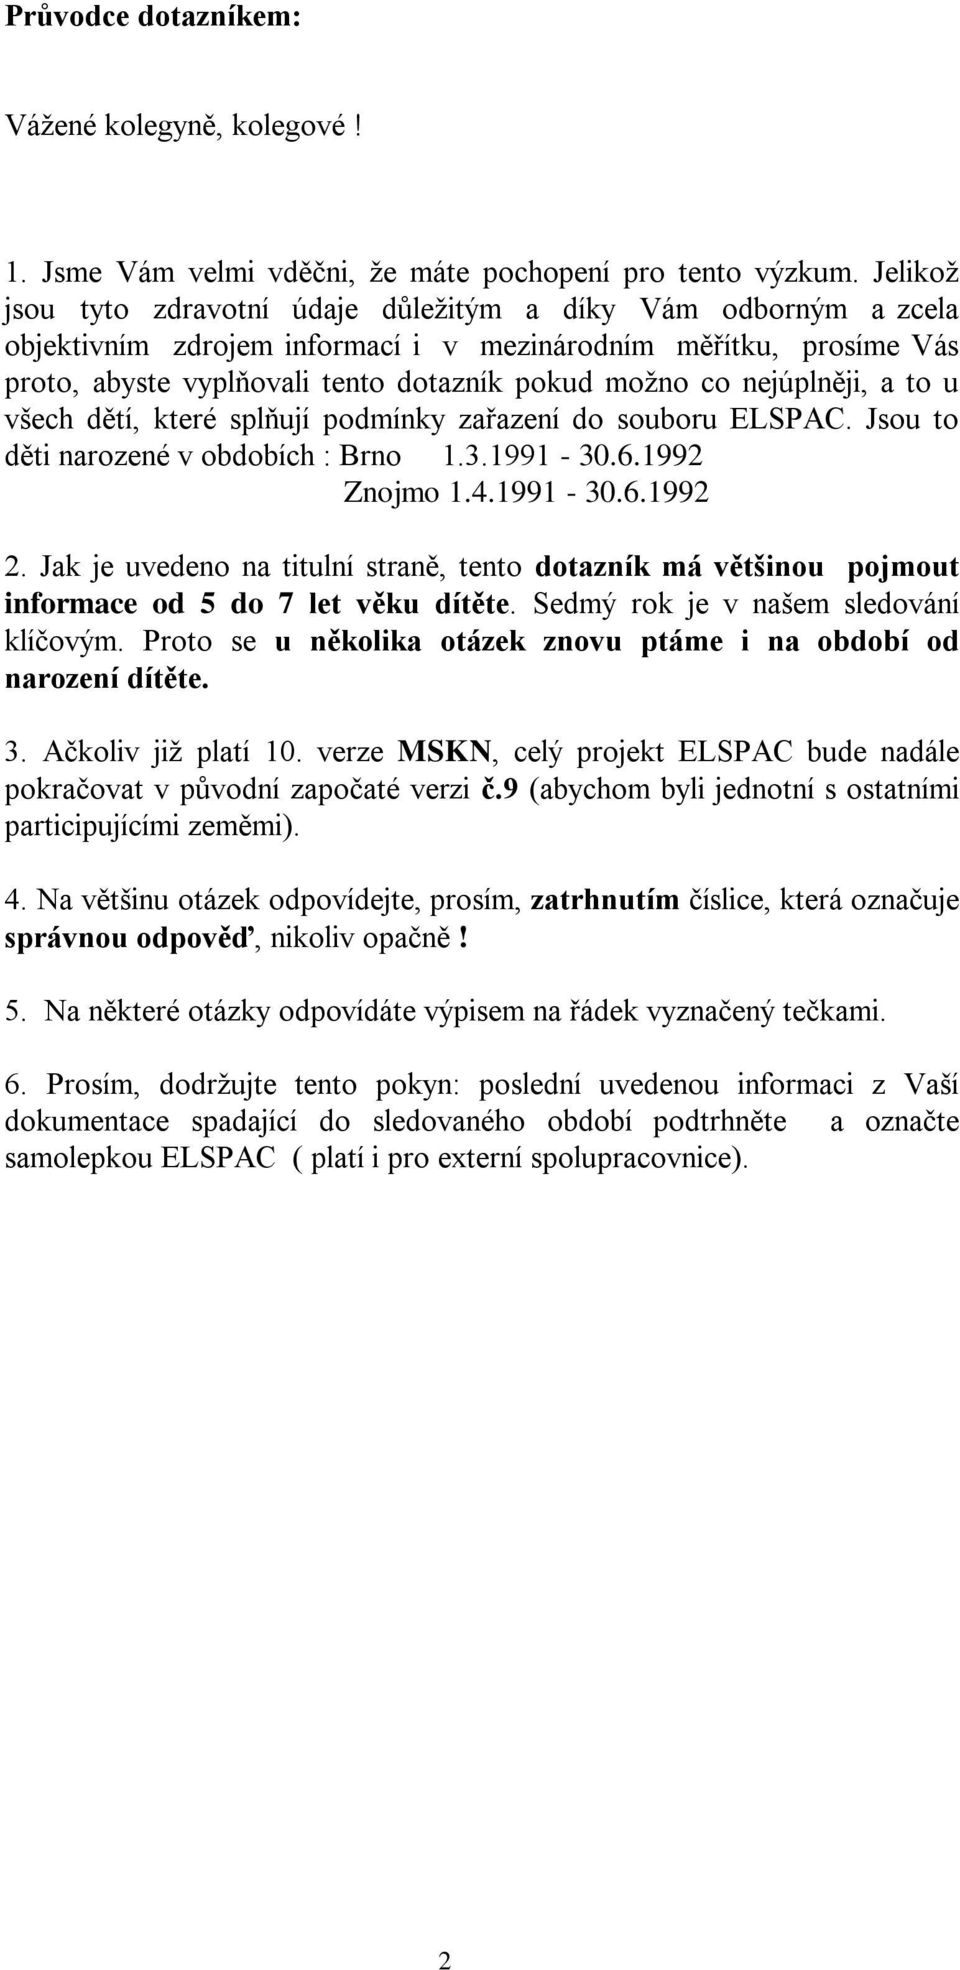 nejúplněji, a to u všech dětí, které splňují podmínky zařazení do souboru ELSPAC. Jsou to děti narozené v obdobích : Brno 1.3.1991-30.6.1992 Znojmo 1.4.1991-30.6.1992 2.